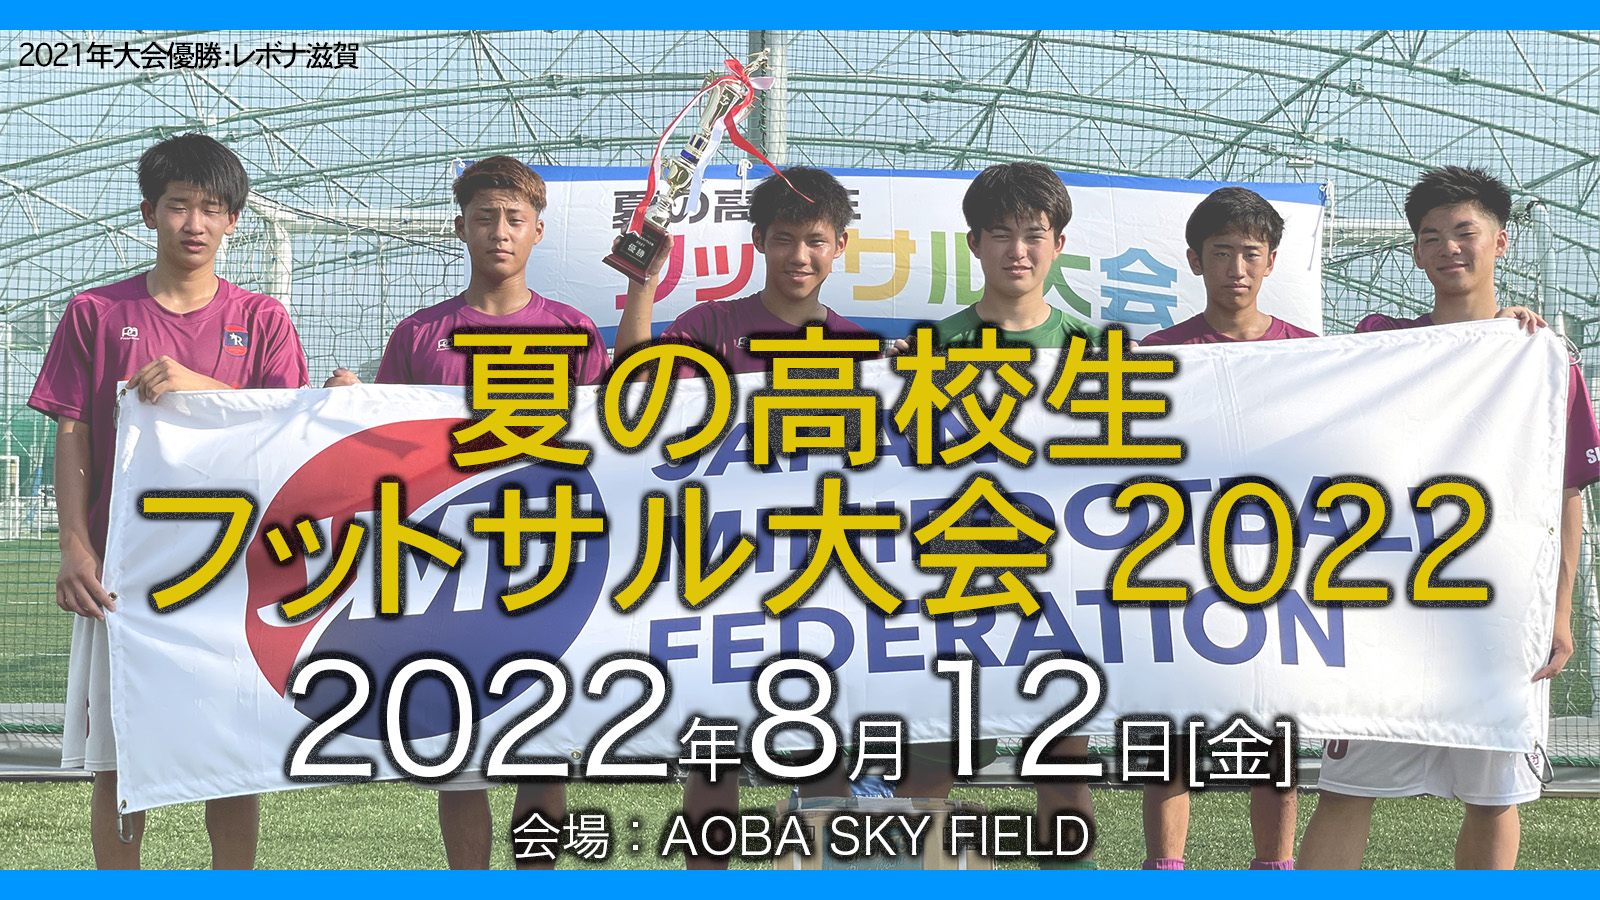 夏の高校生フットサル大会22開催 日本ミニフットボール協会 Jmf